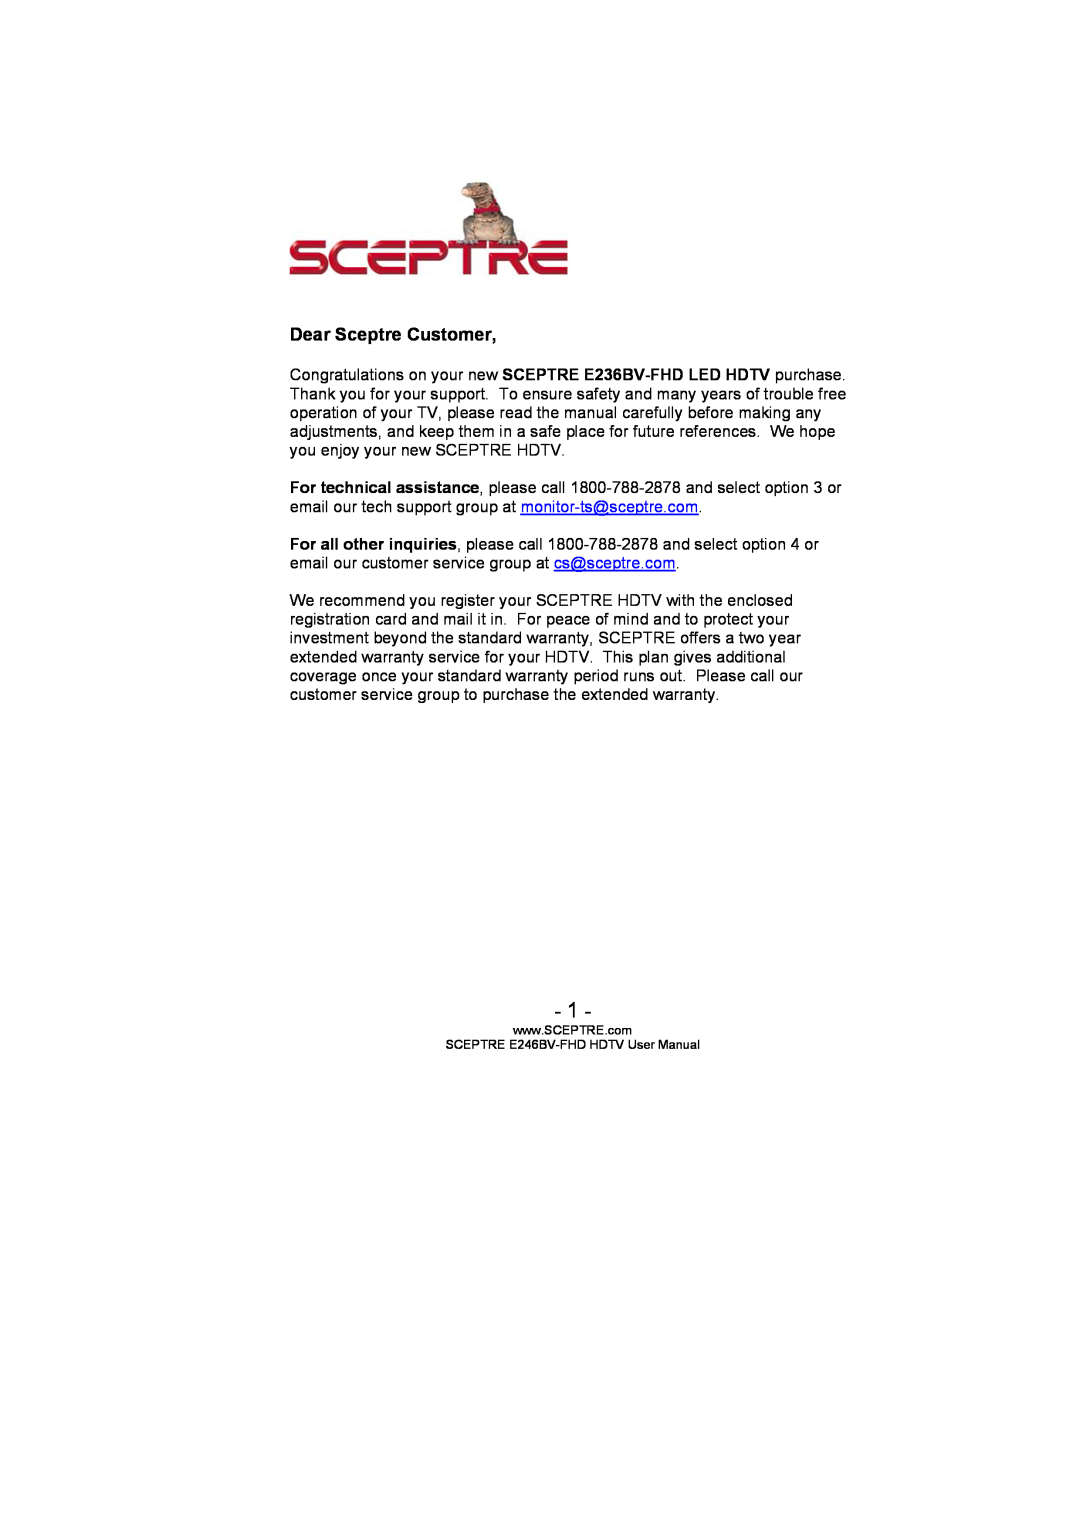 Sceptre Technologies LED HDTV, E236BV-FHD user manual Dear Sceptre Customer, SCEPTRE E246BV-FHD HDTV User Manual 